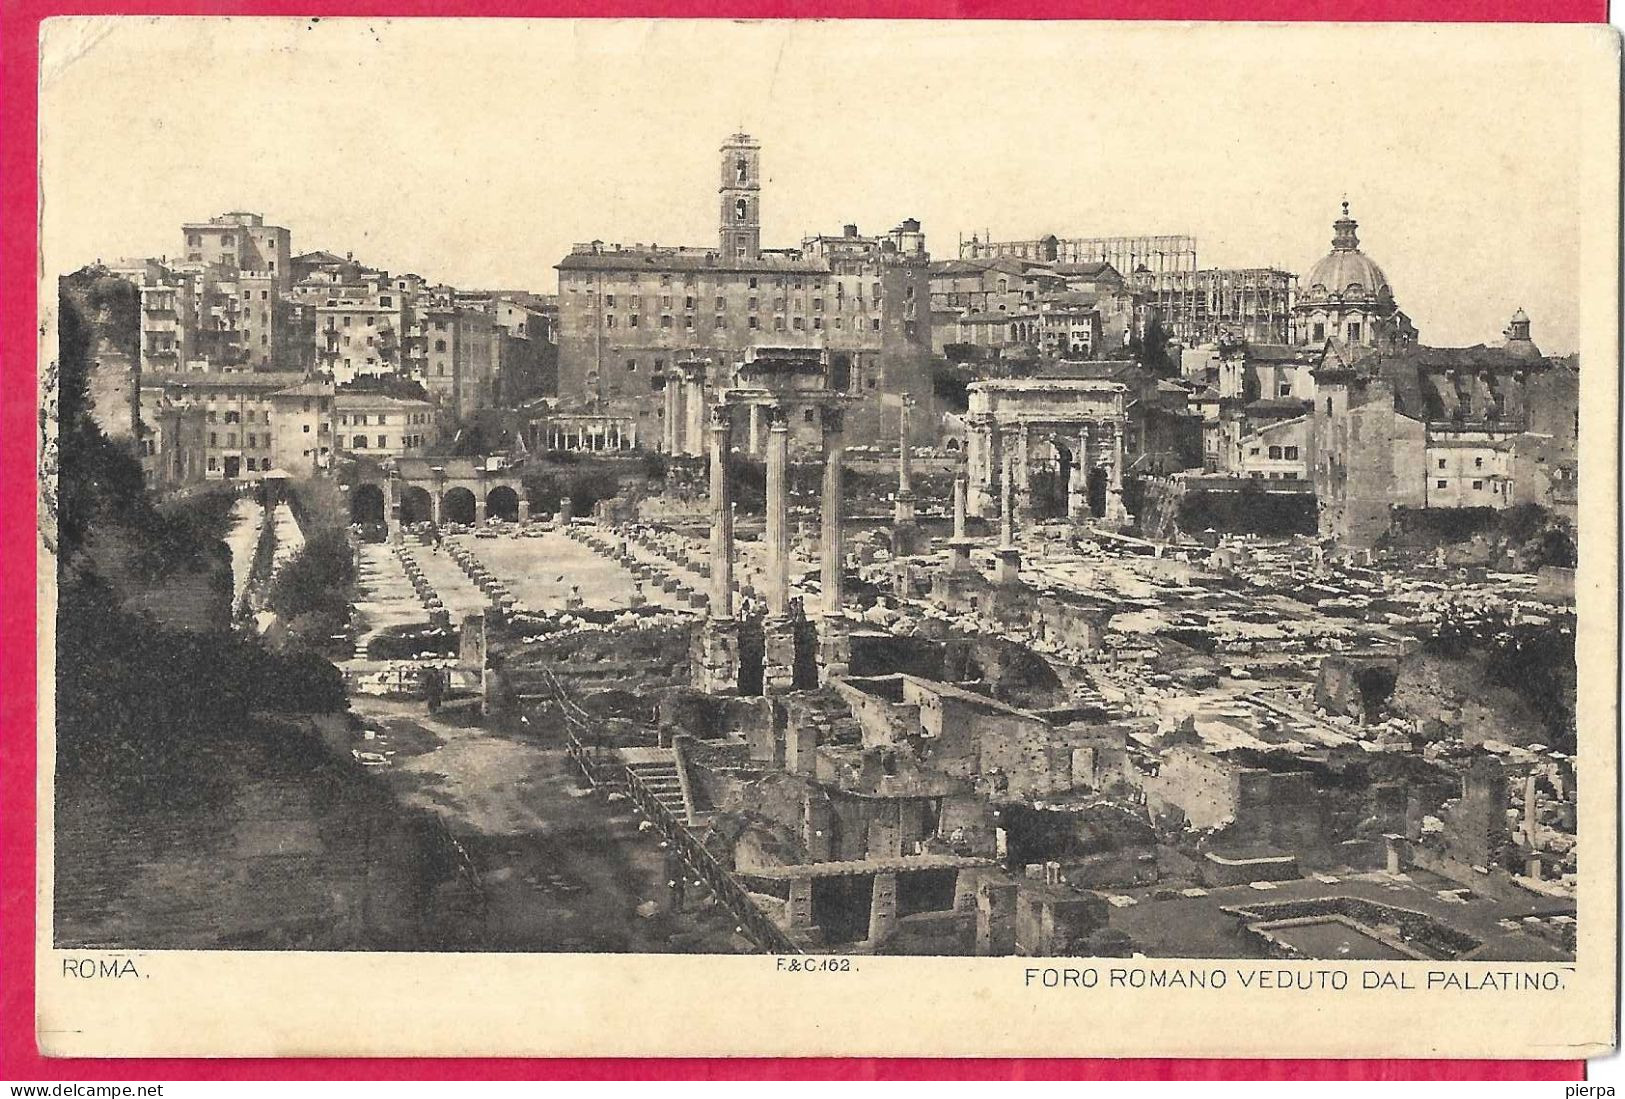 ROMA - FORO ROMANO - FORMATO PICCOLO - VIAGGIATA 1895 PER LA FRANCIA - Autres Monuments, édifices